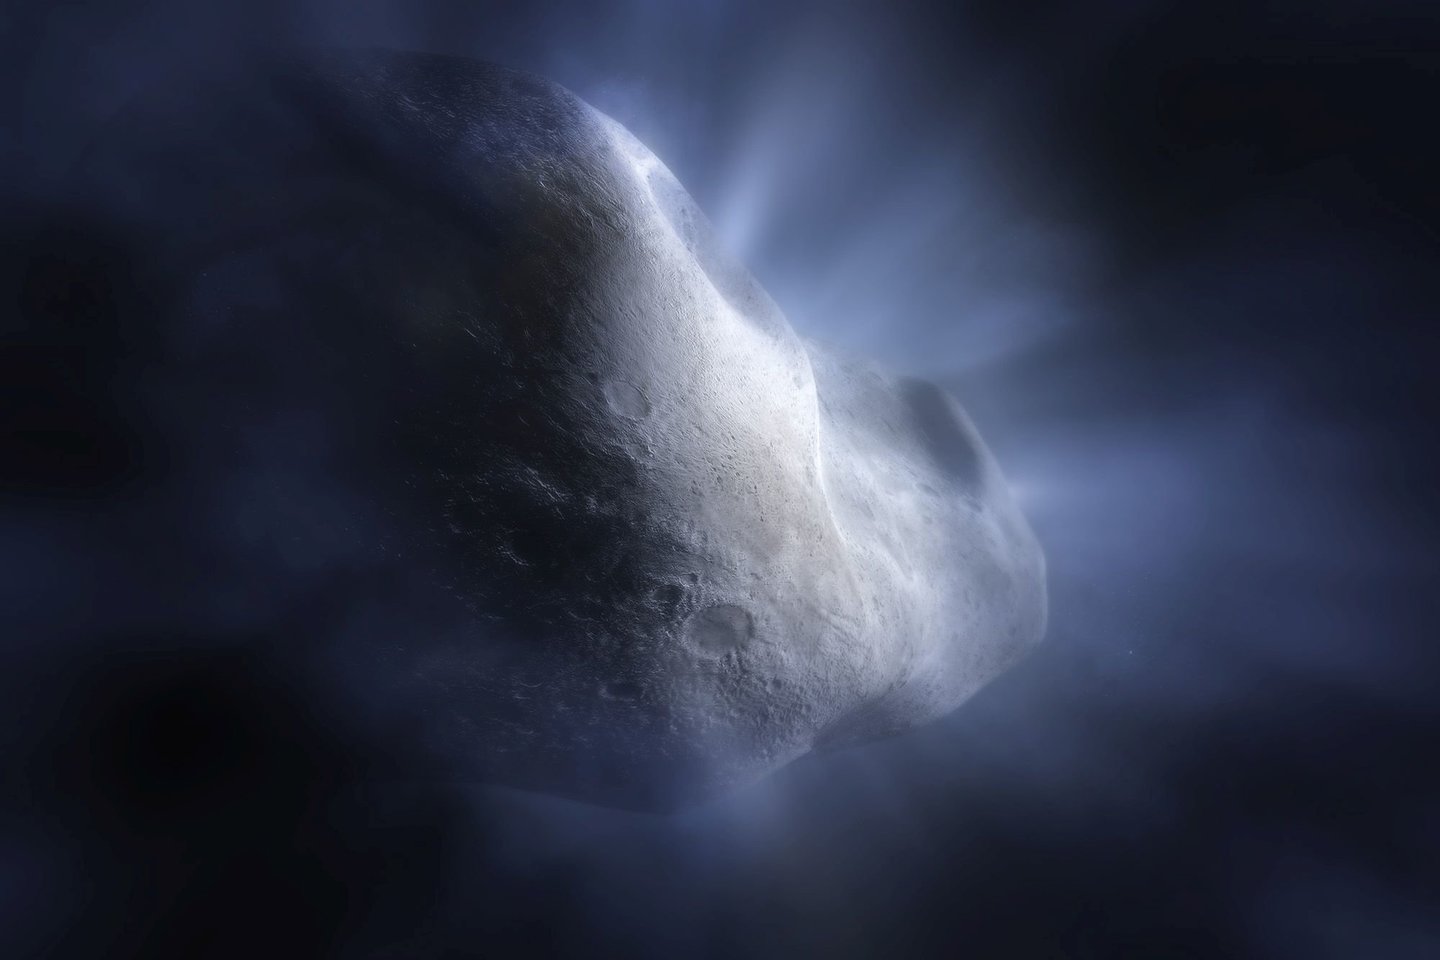  Šioje kometos dailininko interpretacijoje matyti, kaip pagrindinės juostos kometa 238P/Read sublimuojasi: kai kometos orbita artėja prie Saulės, jos vandens ledas išgaruoja. Tai svarbu, nes būtent sublimacija skiria kometas nuo asteroidų, sukurdama jų savitą uodegą ir miglotą aureolę, arba komą.